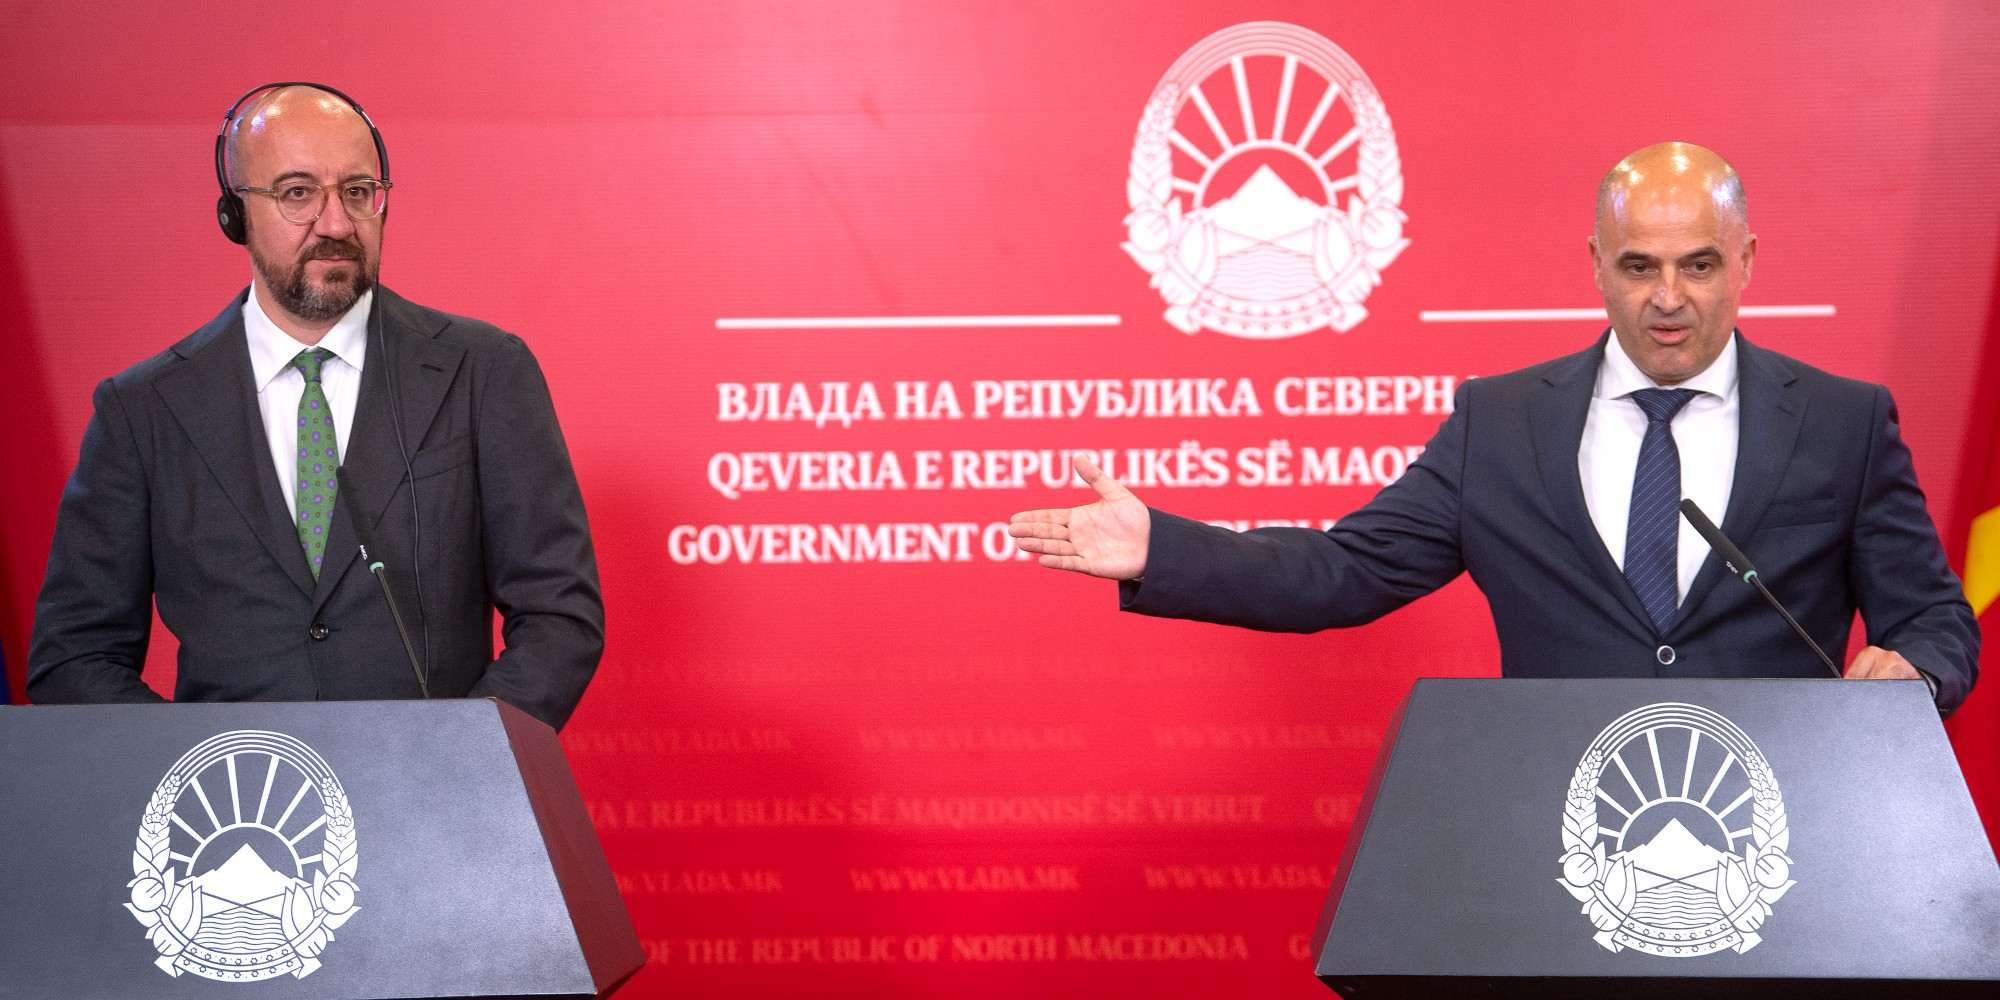 Ο πρόεδρος του Ευρωπαϊκού Συμβουλίου Σαρλ Μισέλ και ο πρωθυπουργός της Βόρειας Μακεδονίας, Ντιμίταρ Κοβάτσεφσκι